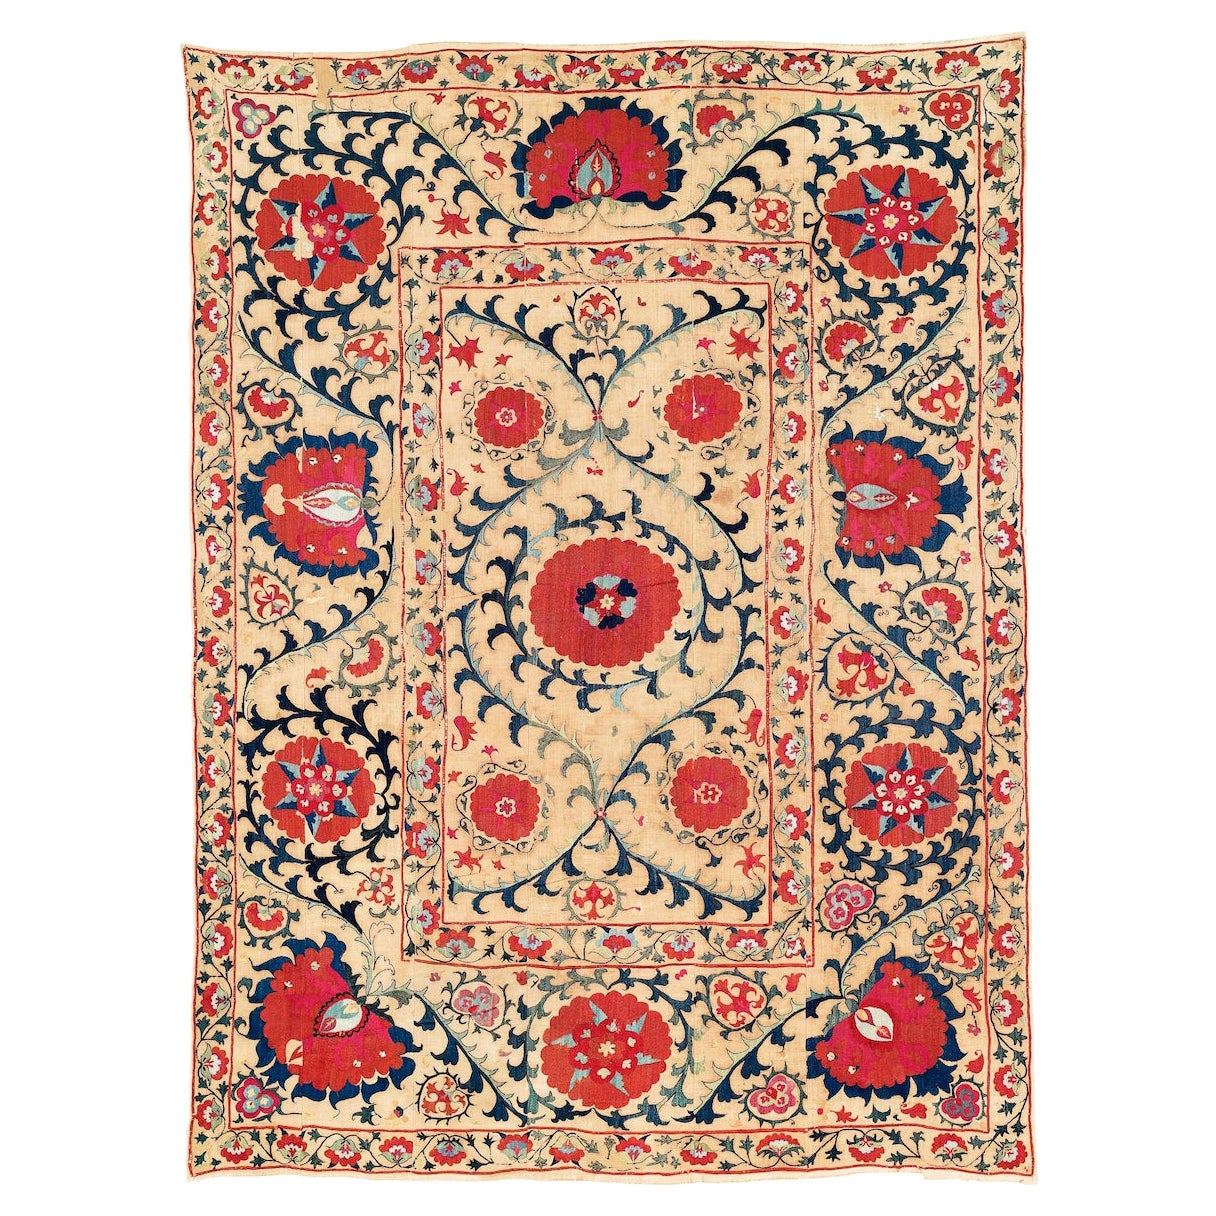 Antique Uzbek Suzani Embroidery Rug, c. 1800